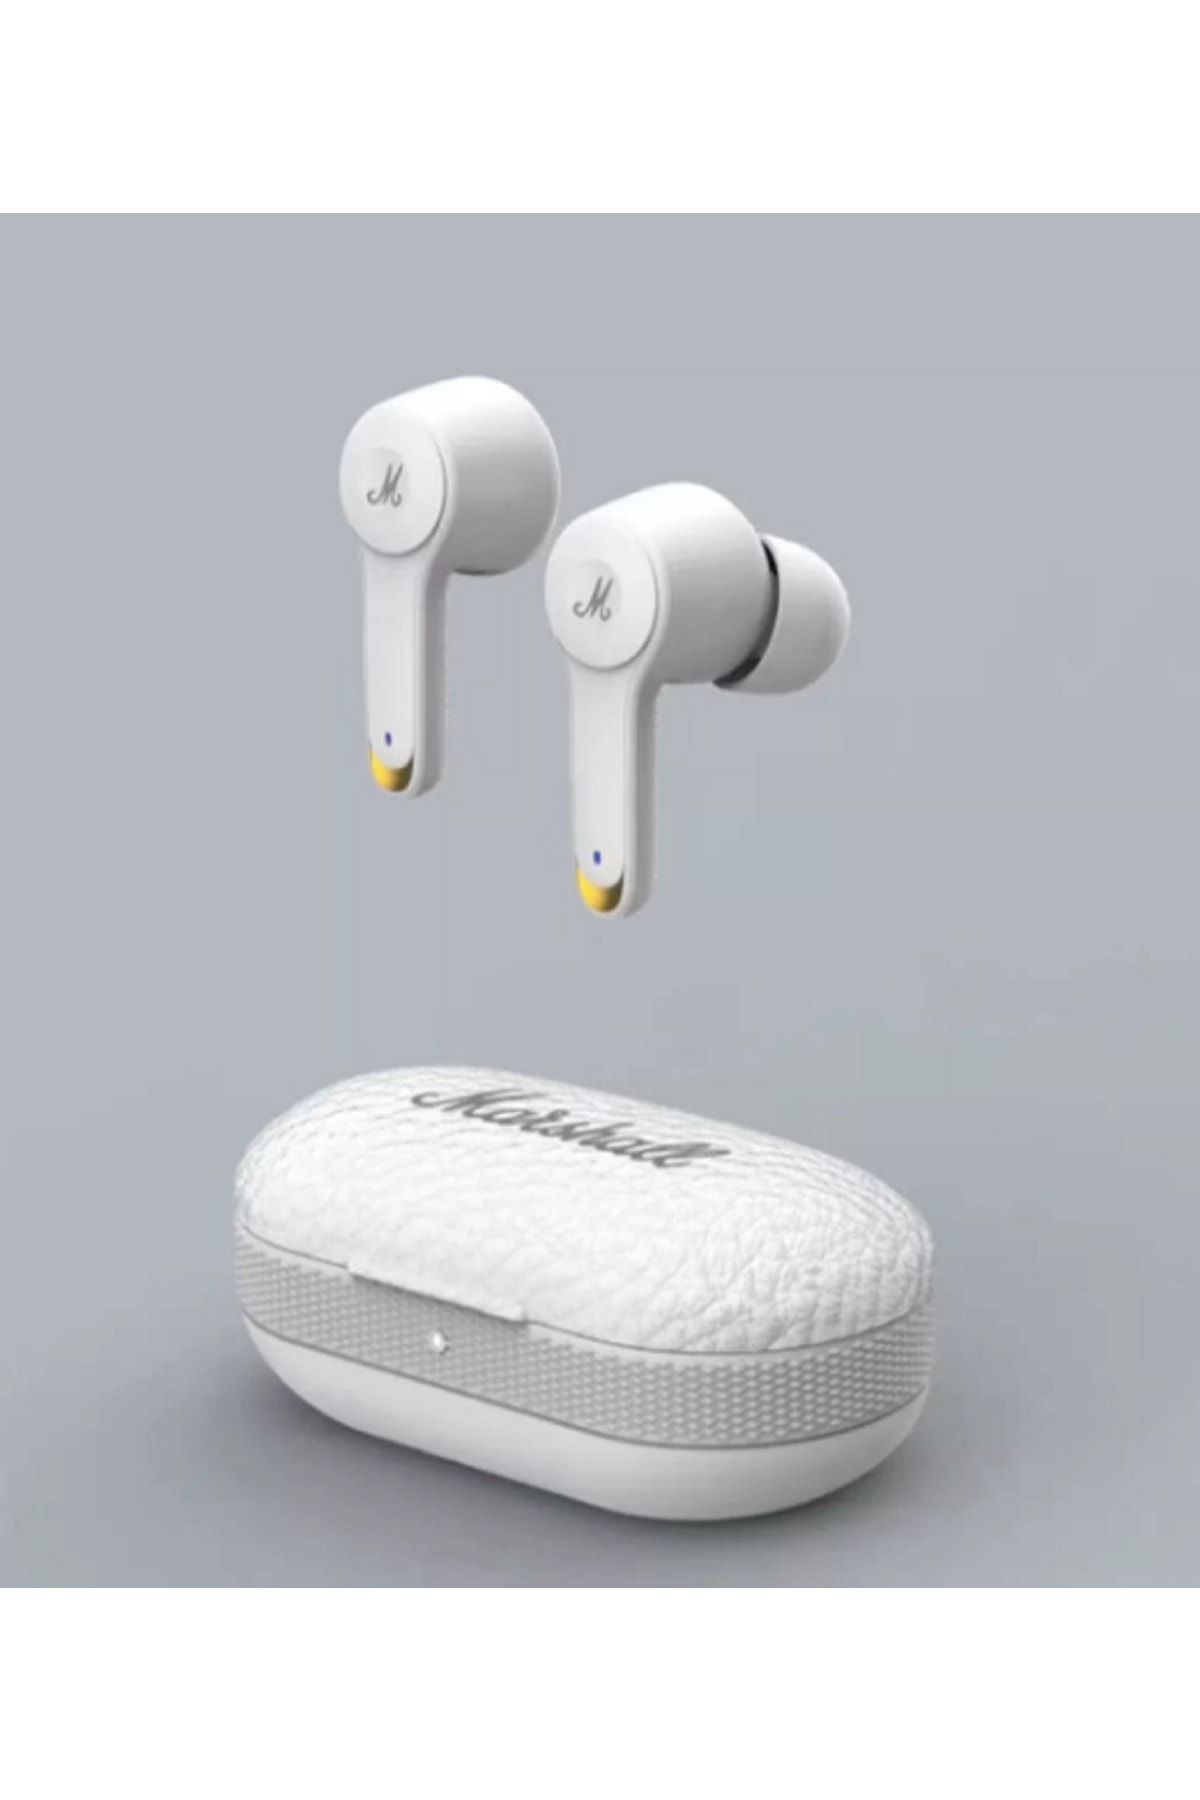 Genel Markalar Marshall Mod 3 Kablosuz Bluetooth Kulakiçi Kulaklık -android-pc Uyumlu Marshall Kulaklık